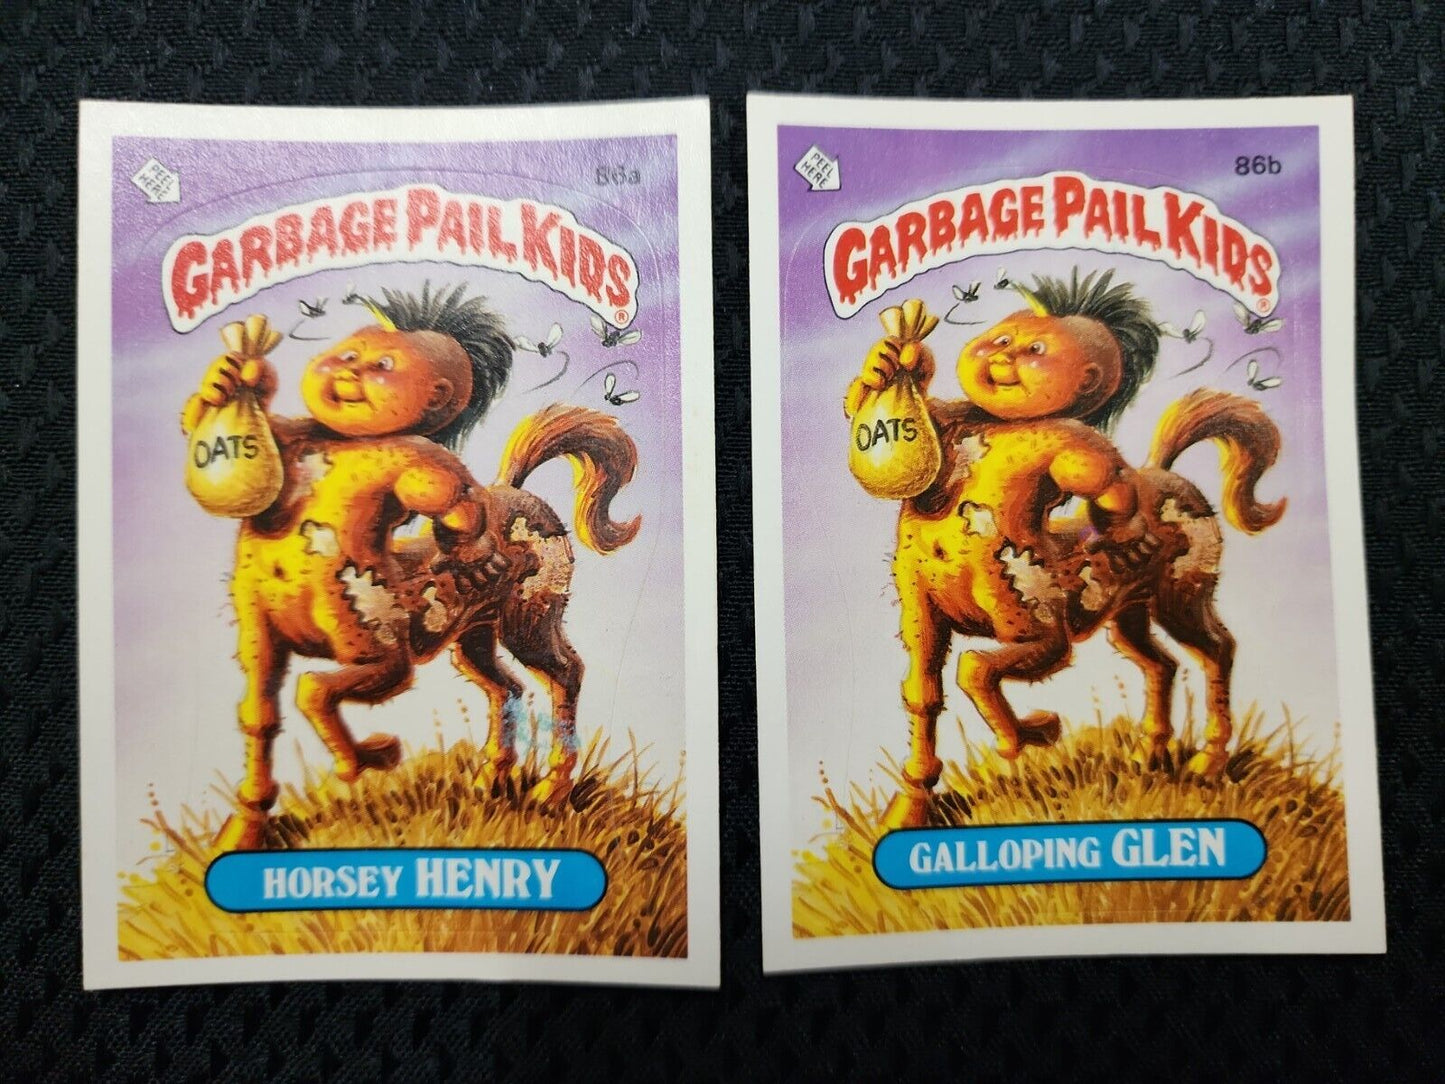 1986 GPK Garbage Pail Kids - Horsey Henry #86a Galloping Glen #86b - 3rd Series